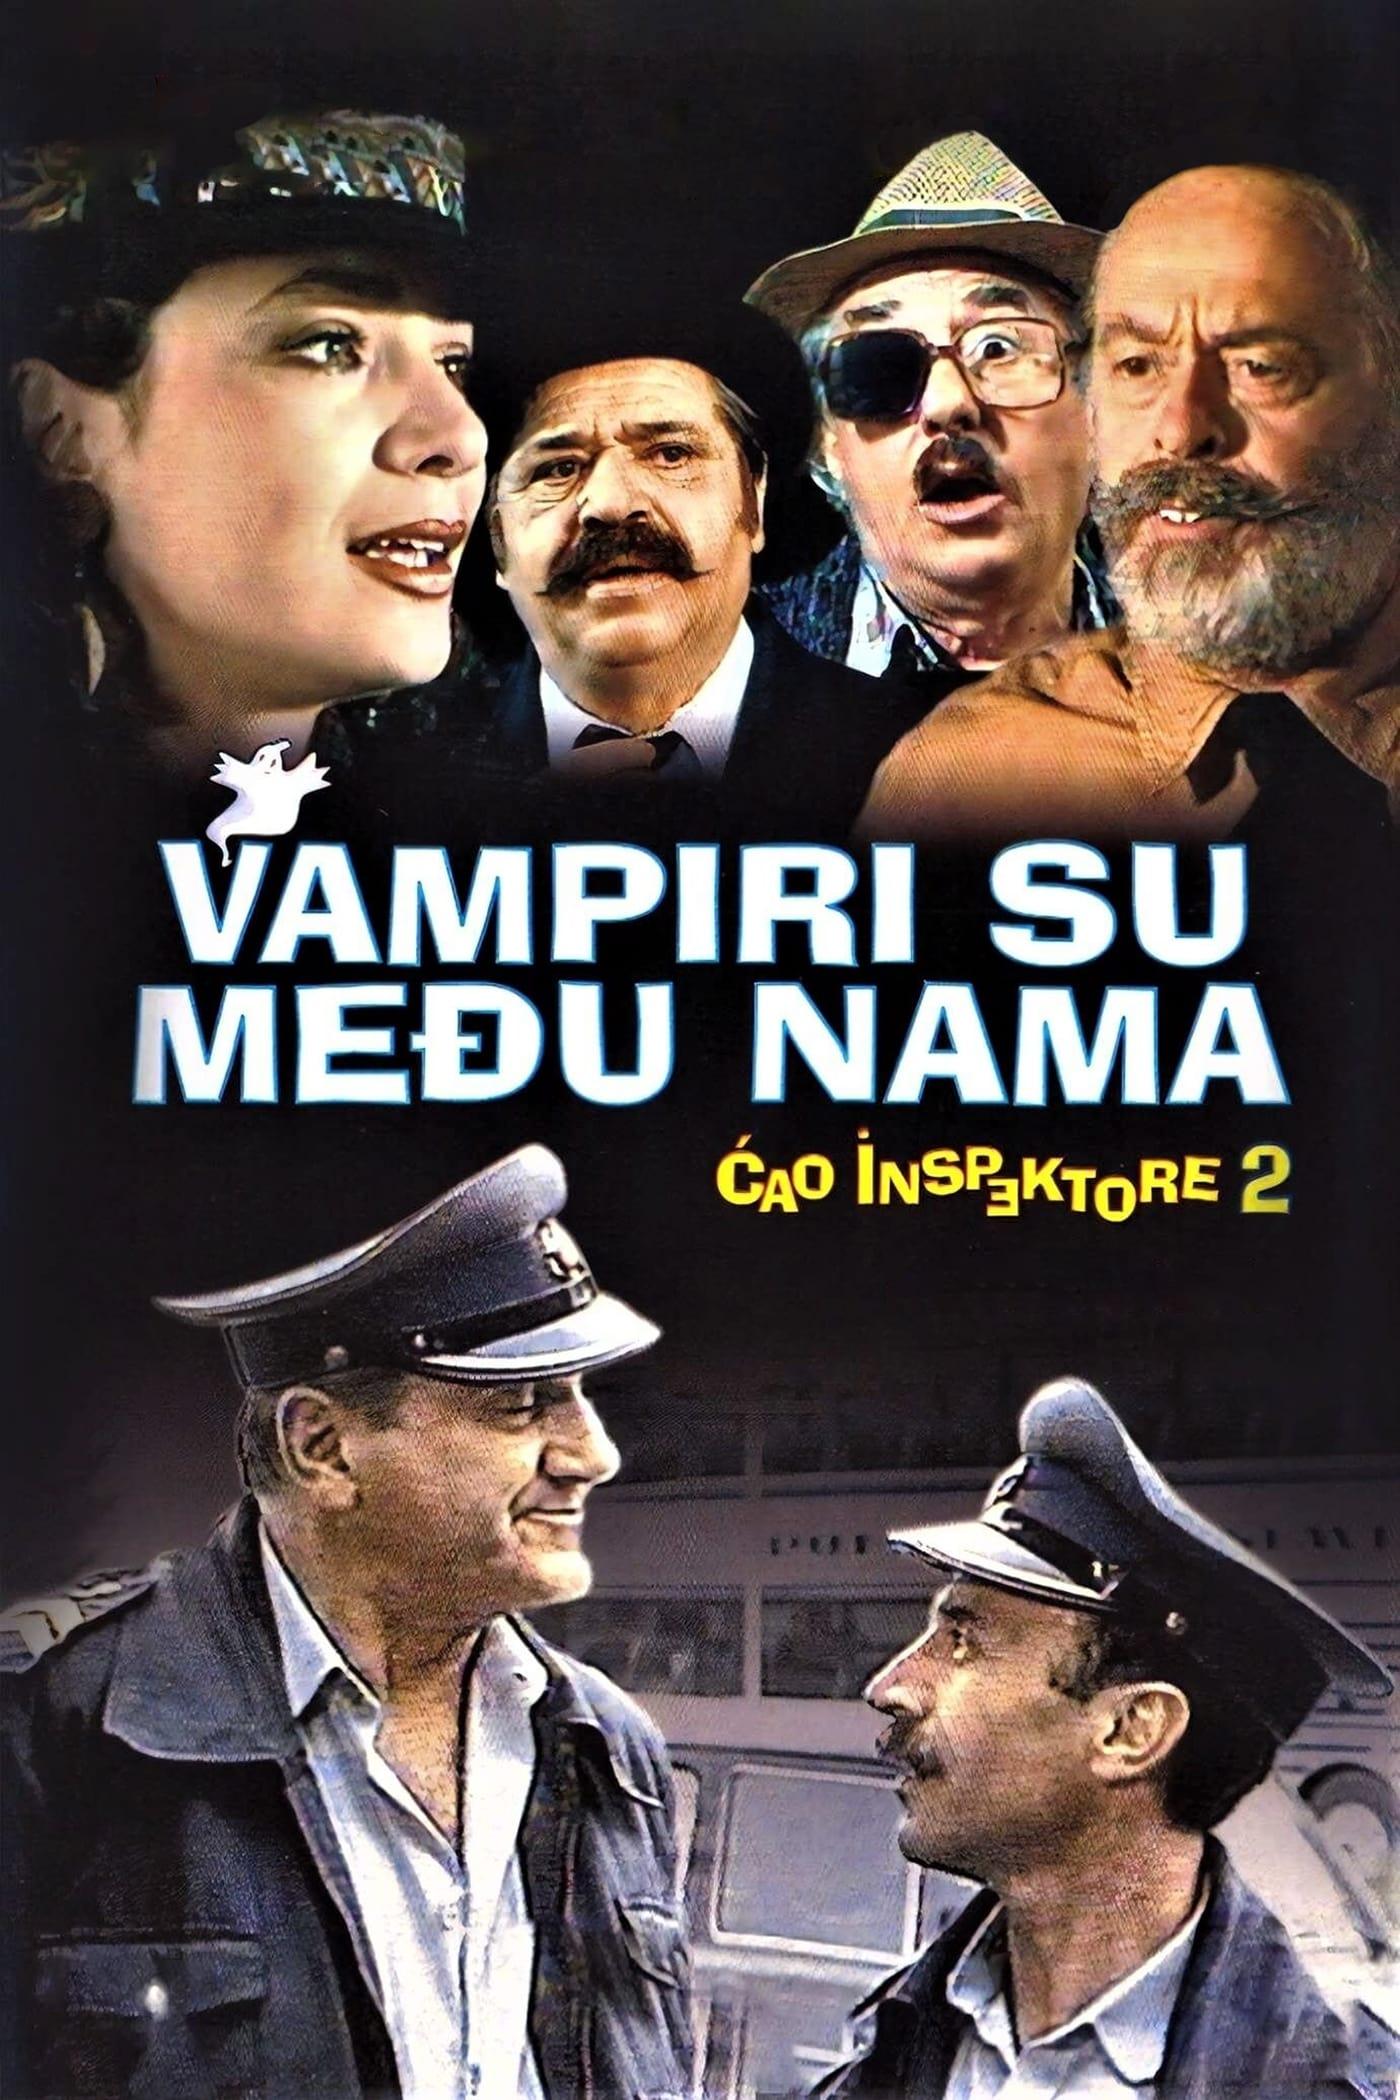 Ćao inspektore 2 - Vampiri su među nama poster